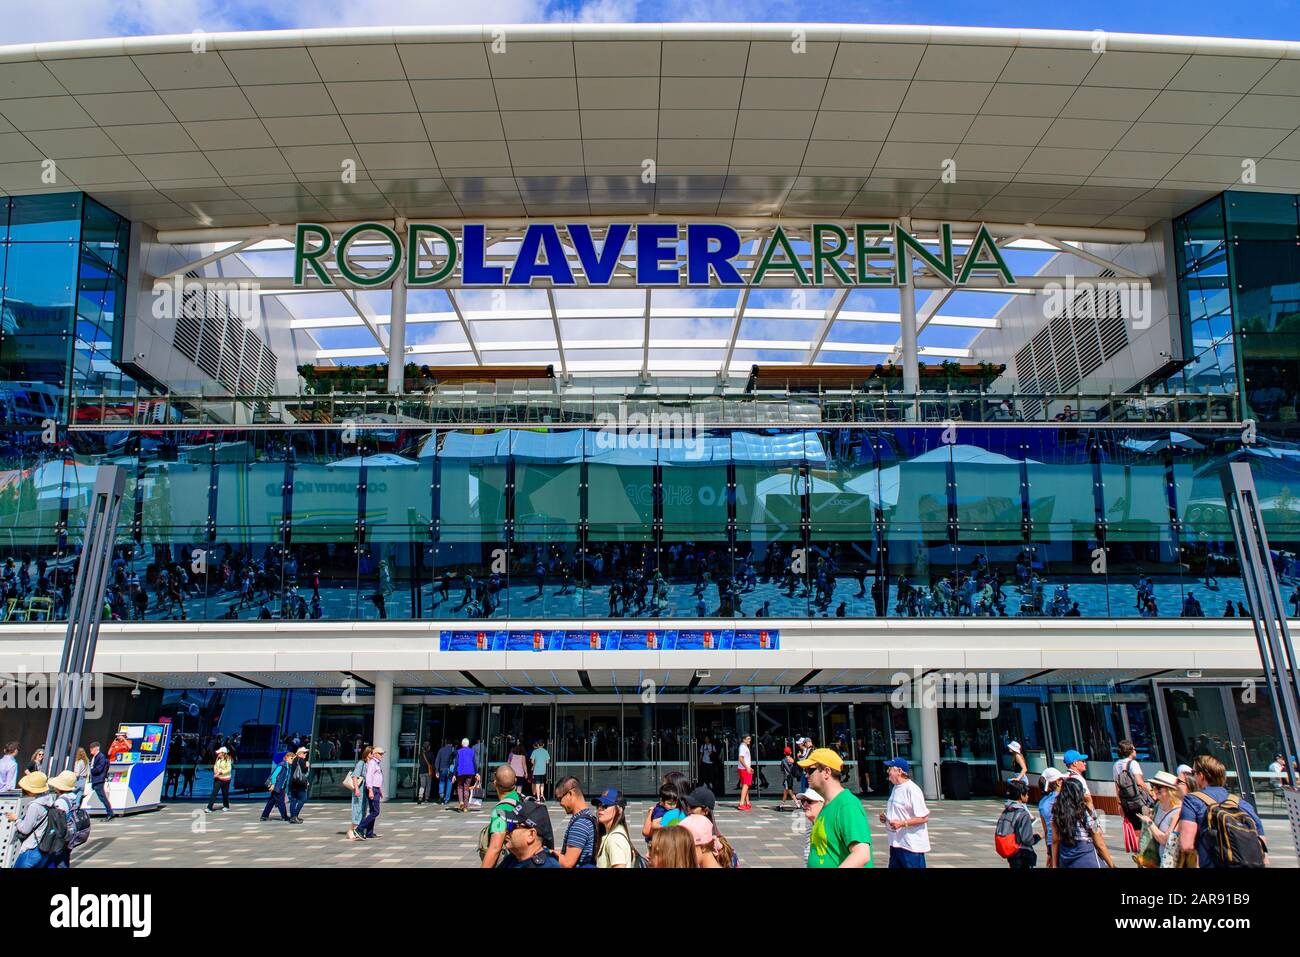 Rod Laver Arena for Australian Open 2020, a tennis venue at Melbourne Park, Melbourne, Australia Stock Photo